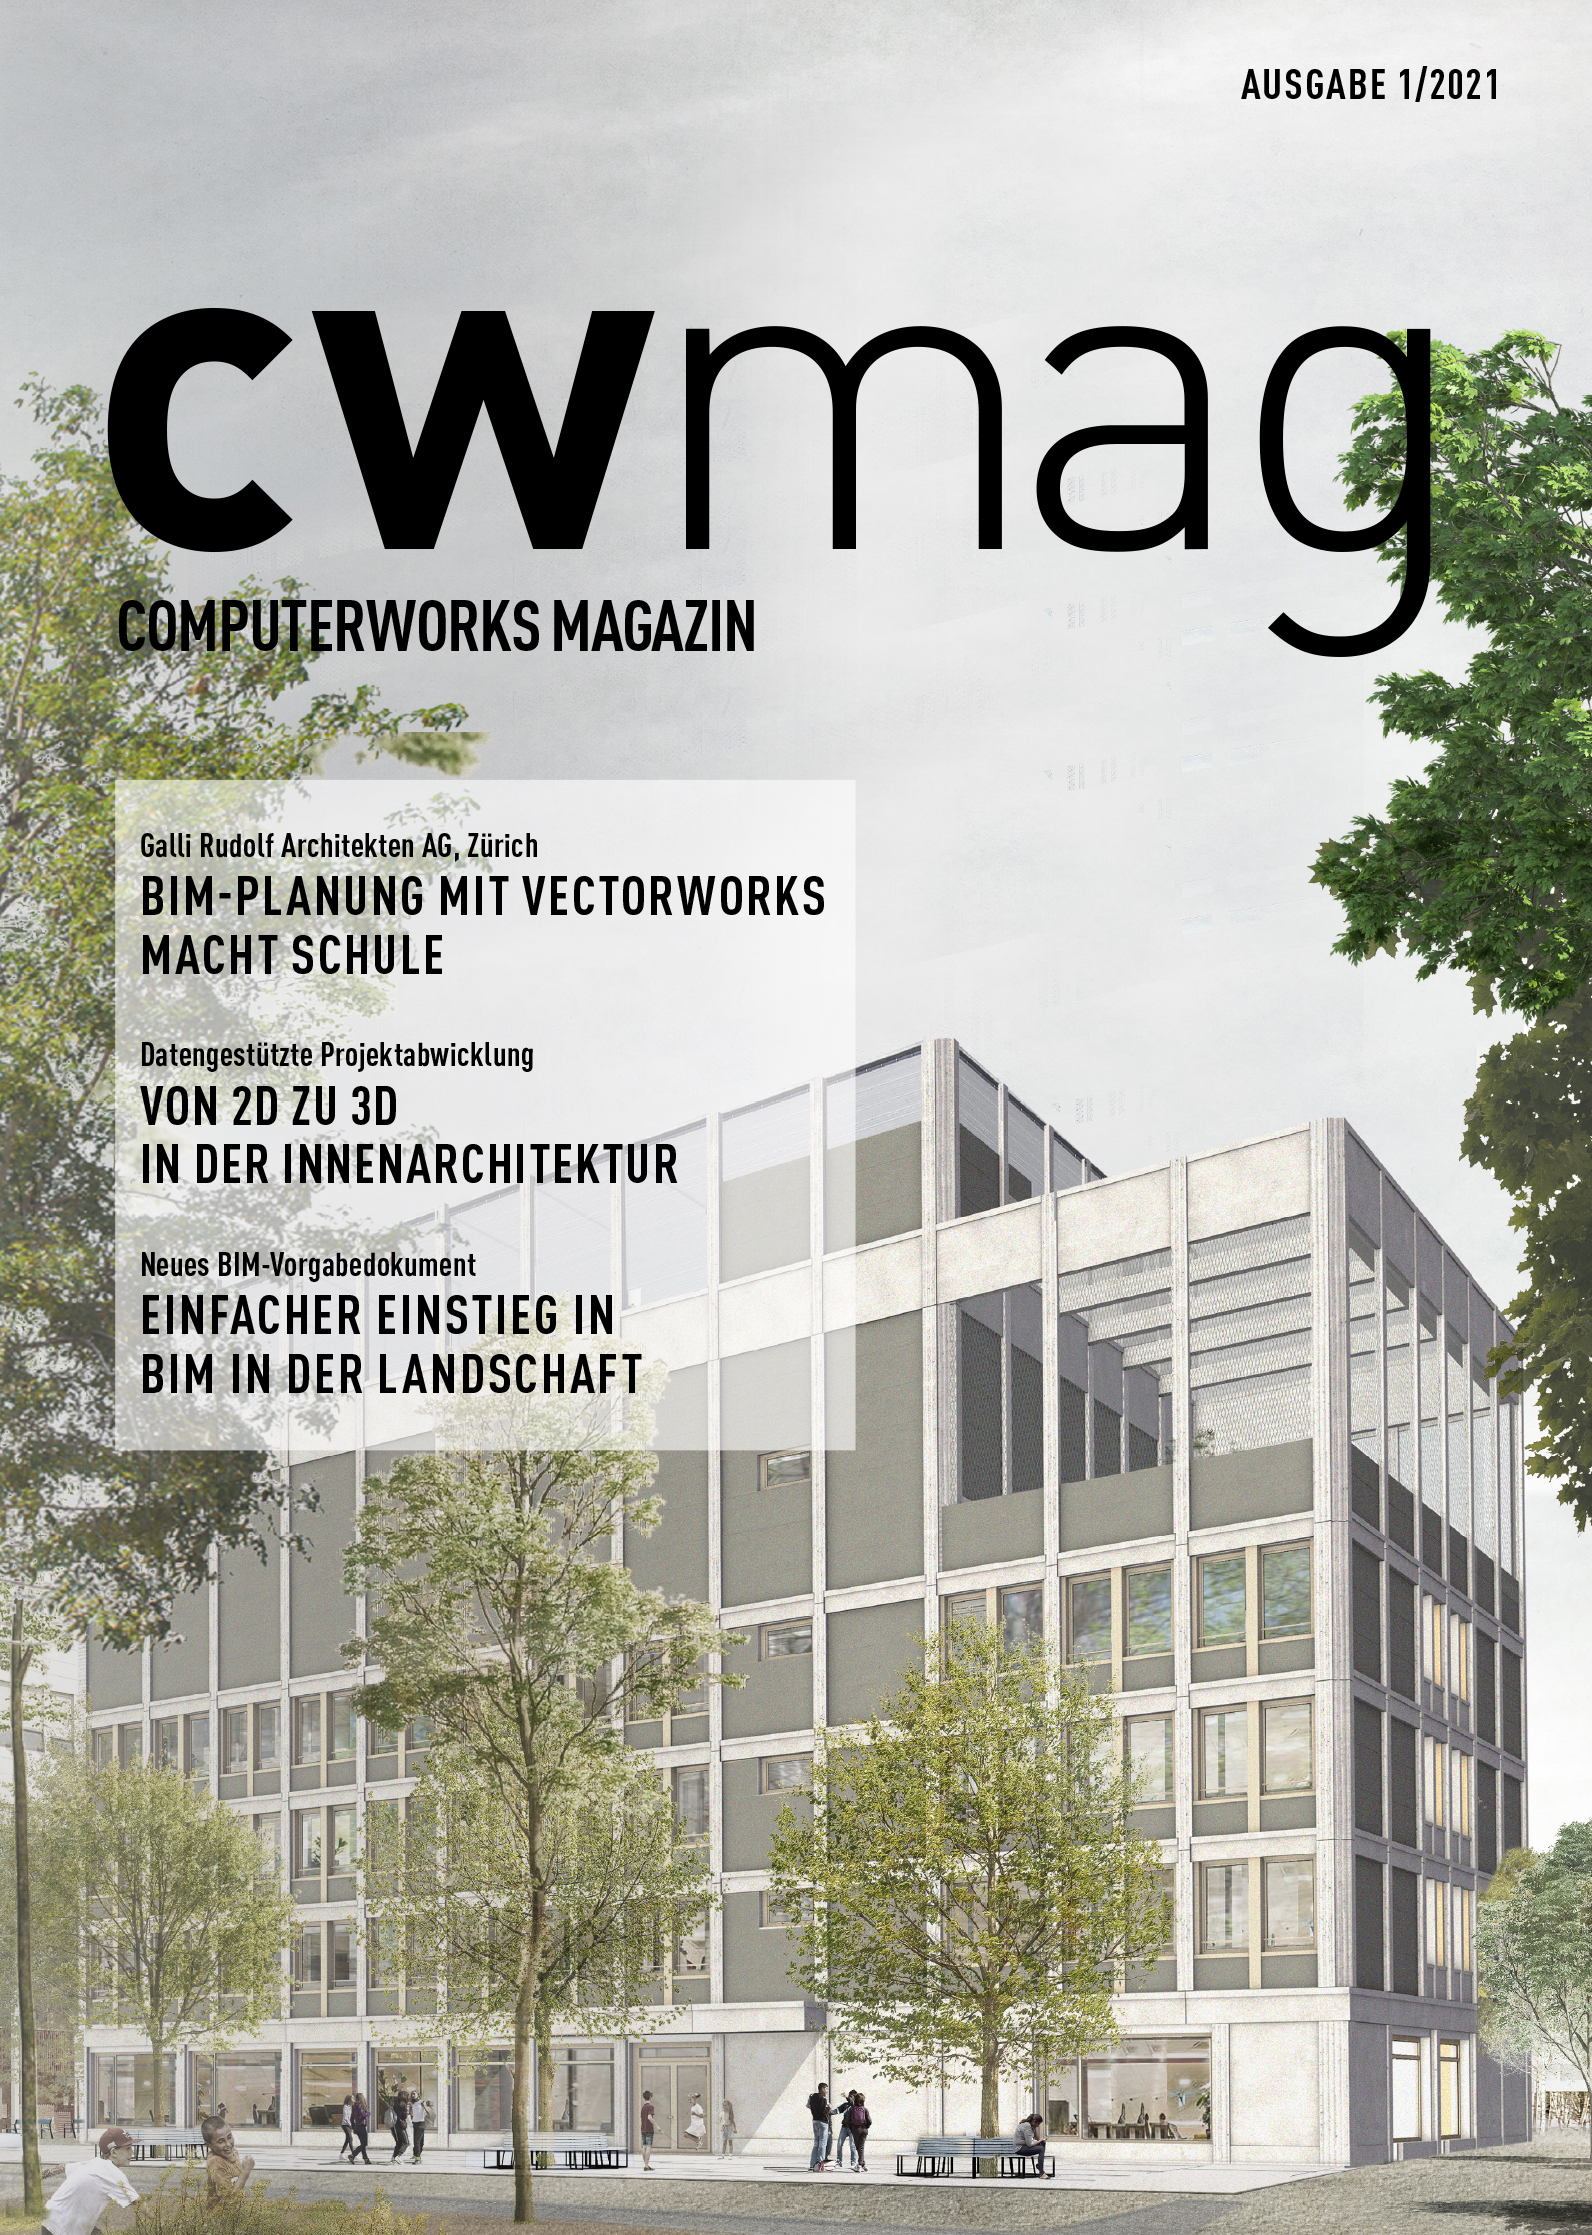 cwmag ComputerWorks Magazin -Ausgabe 01/2021